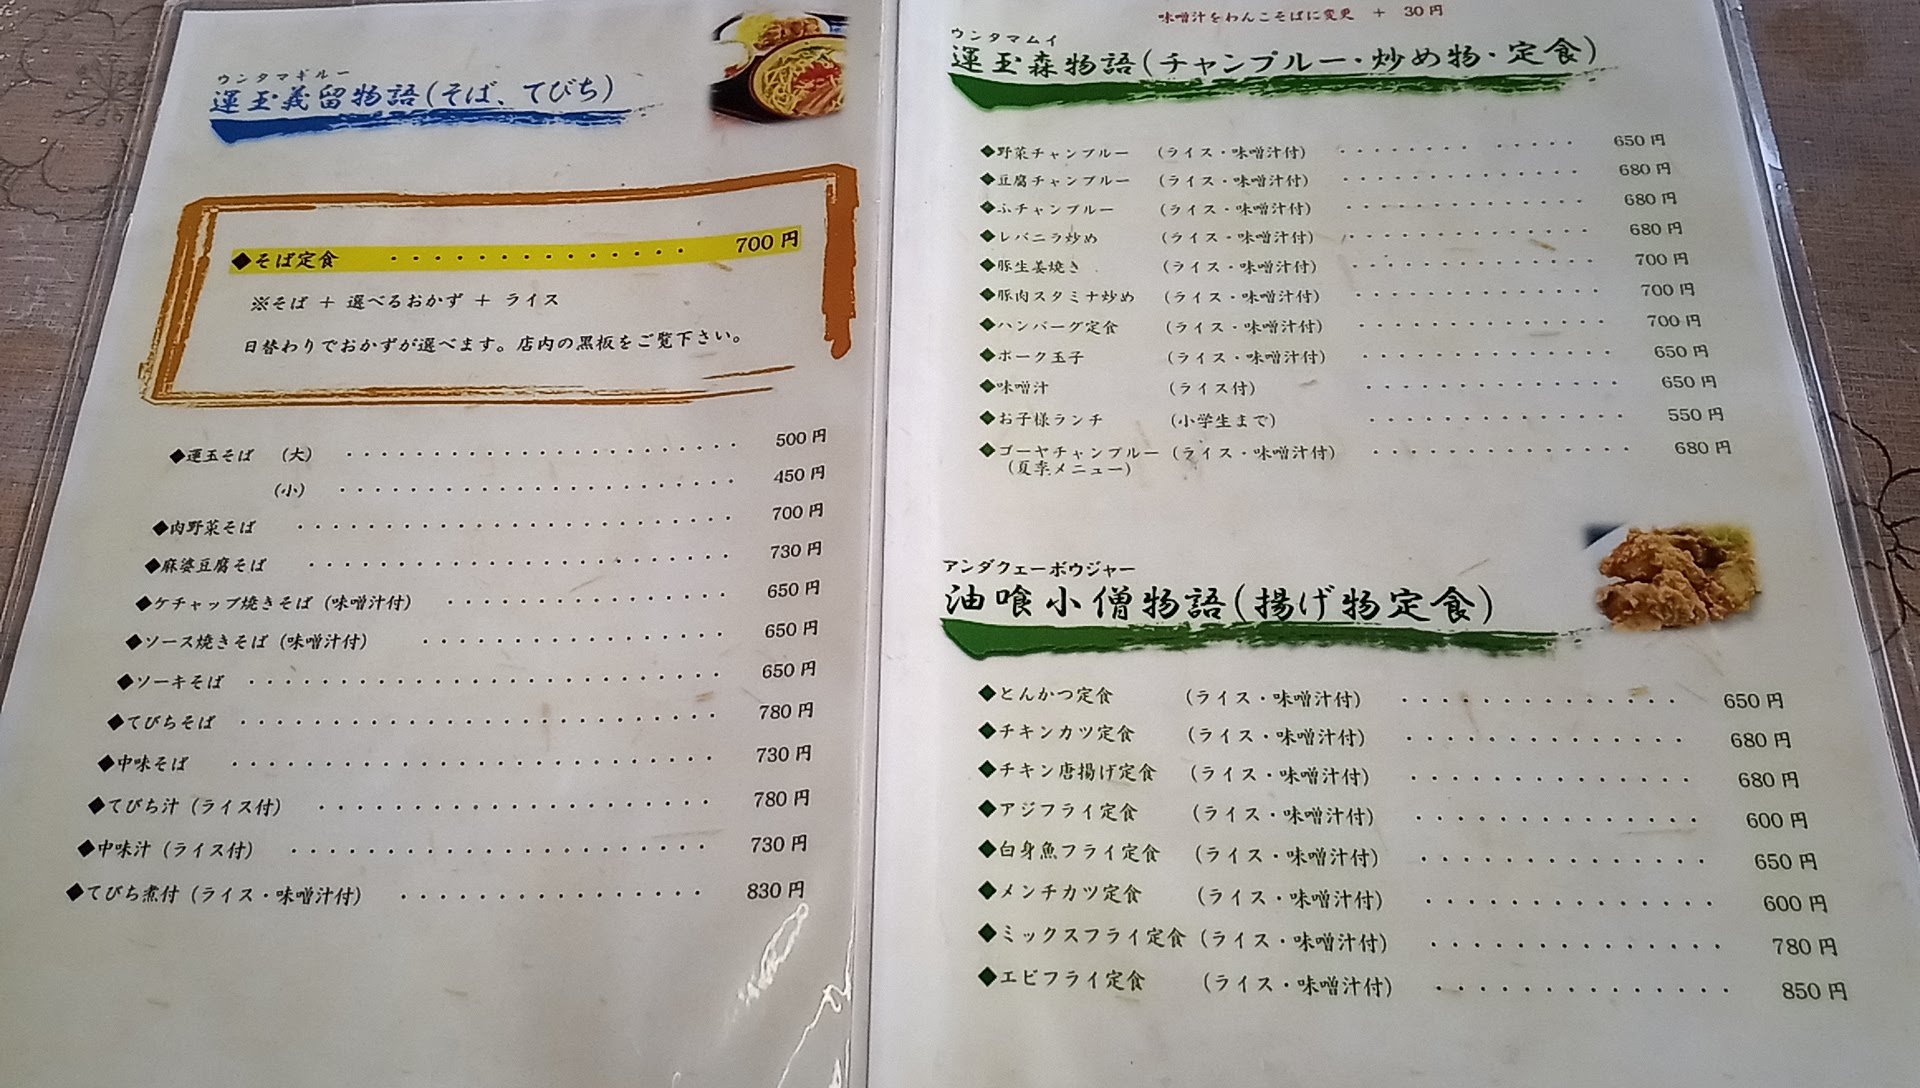 the menu at Untama Shokudou 1